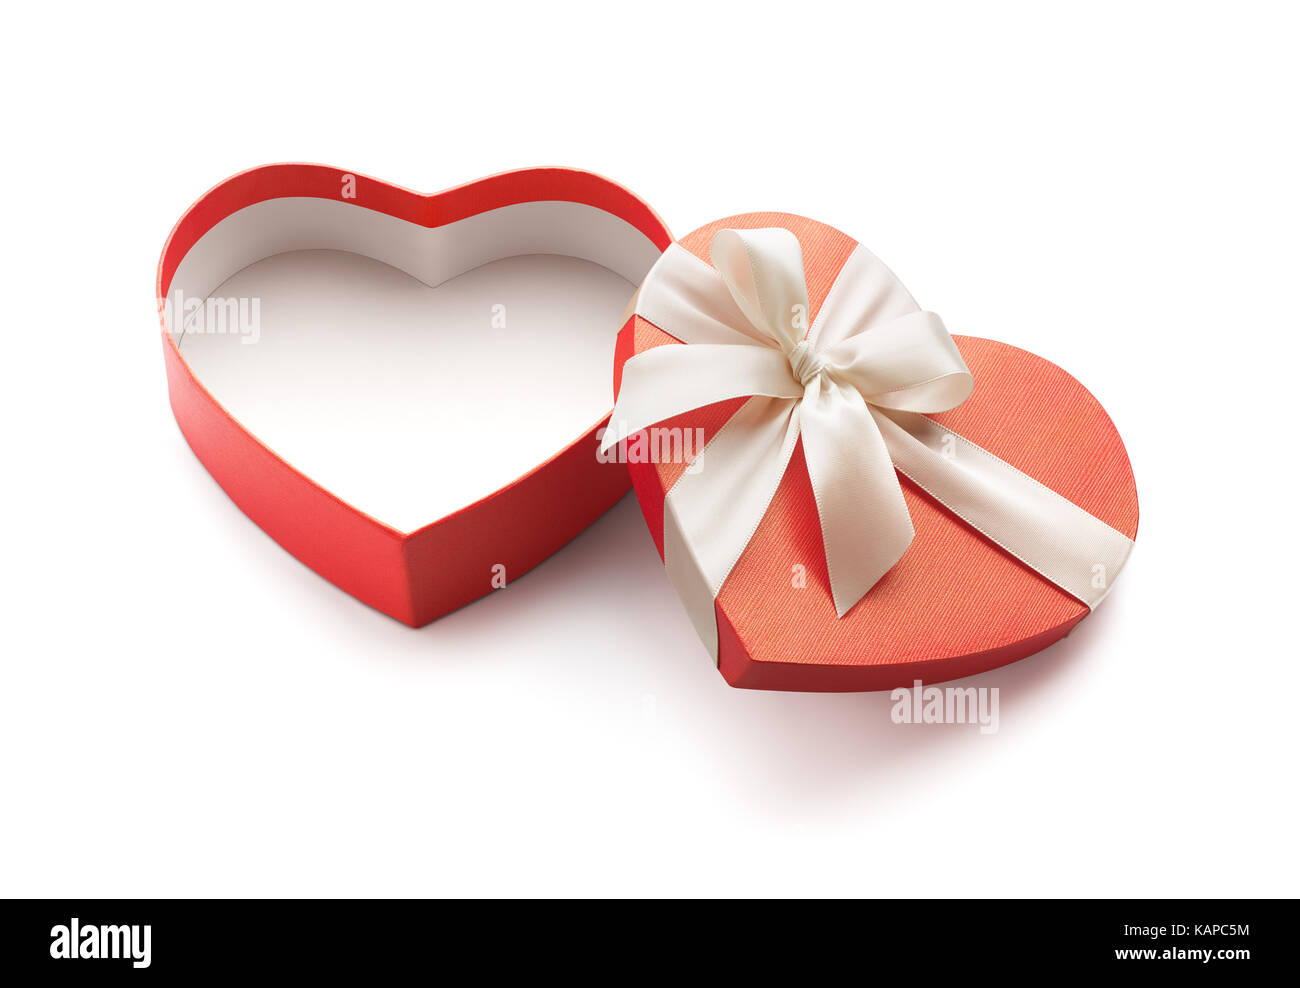 Cuore rosso forma aperta confezione regalo isolato su sfondo bianco - percorso di clipping incluso Foto Stock